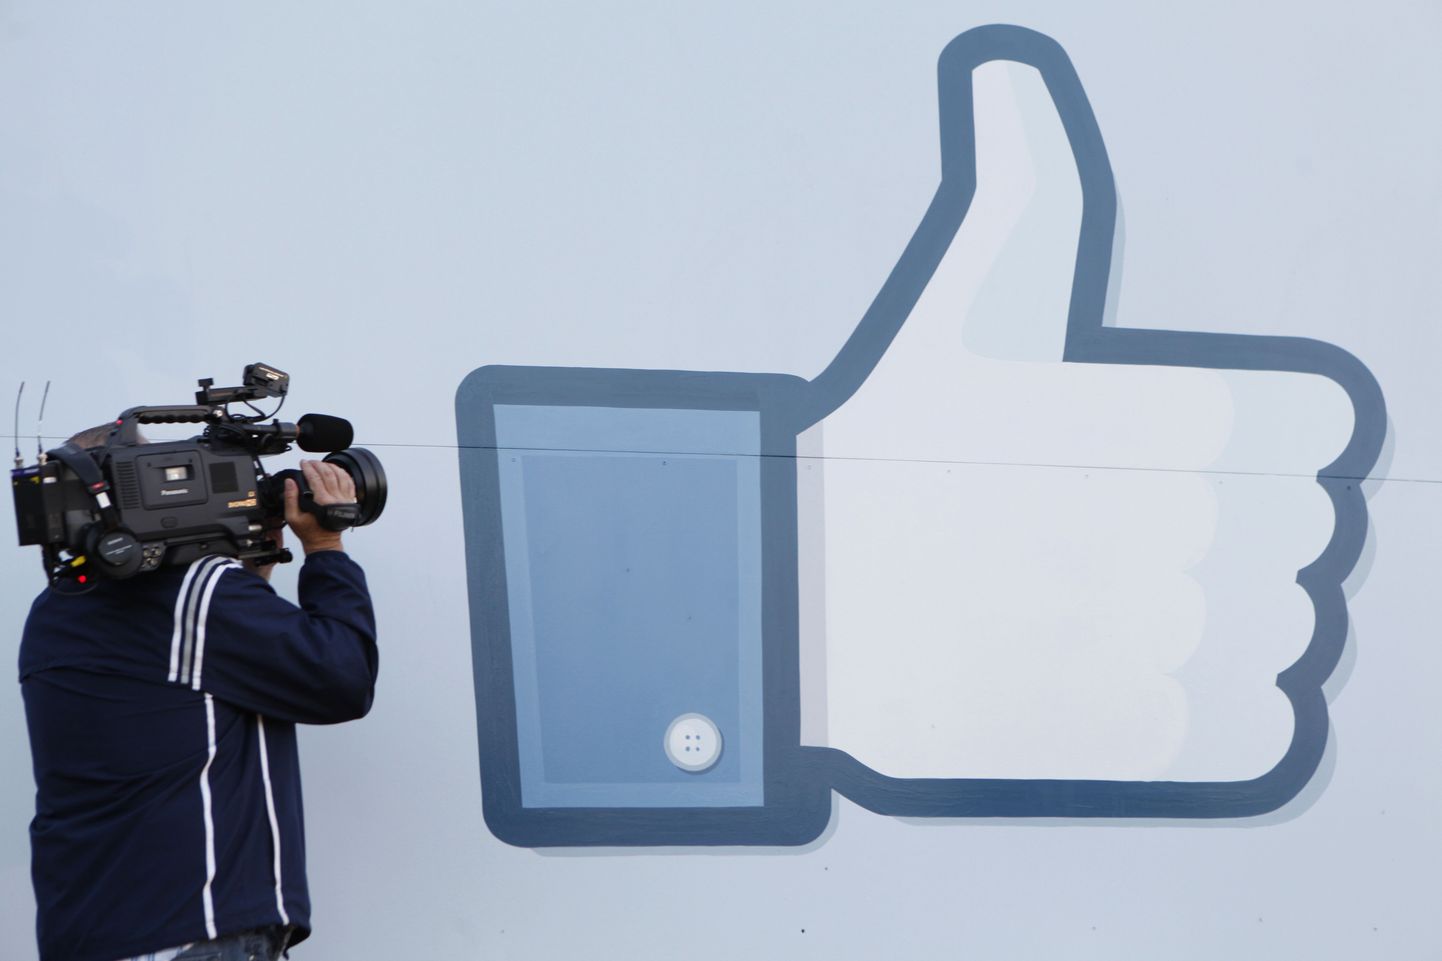 Facebook kaevatakse «like» nupu pärast kohtusse.